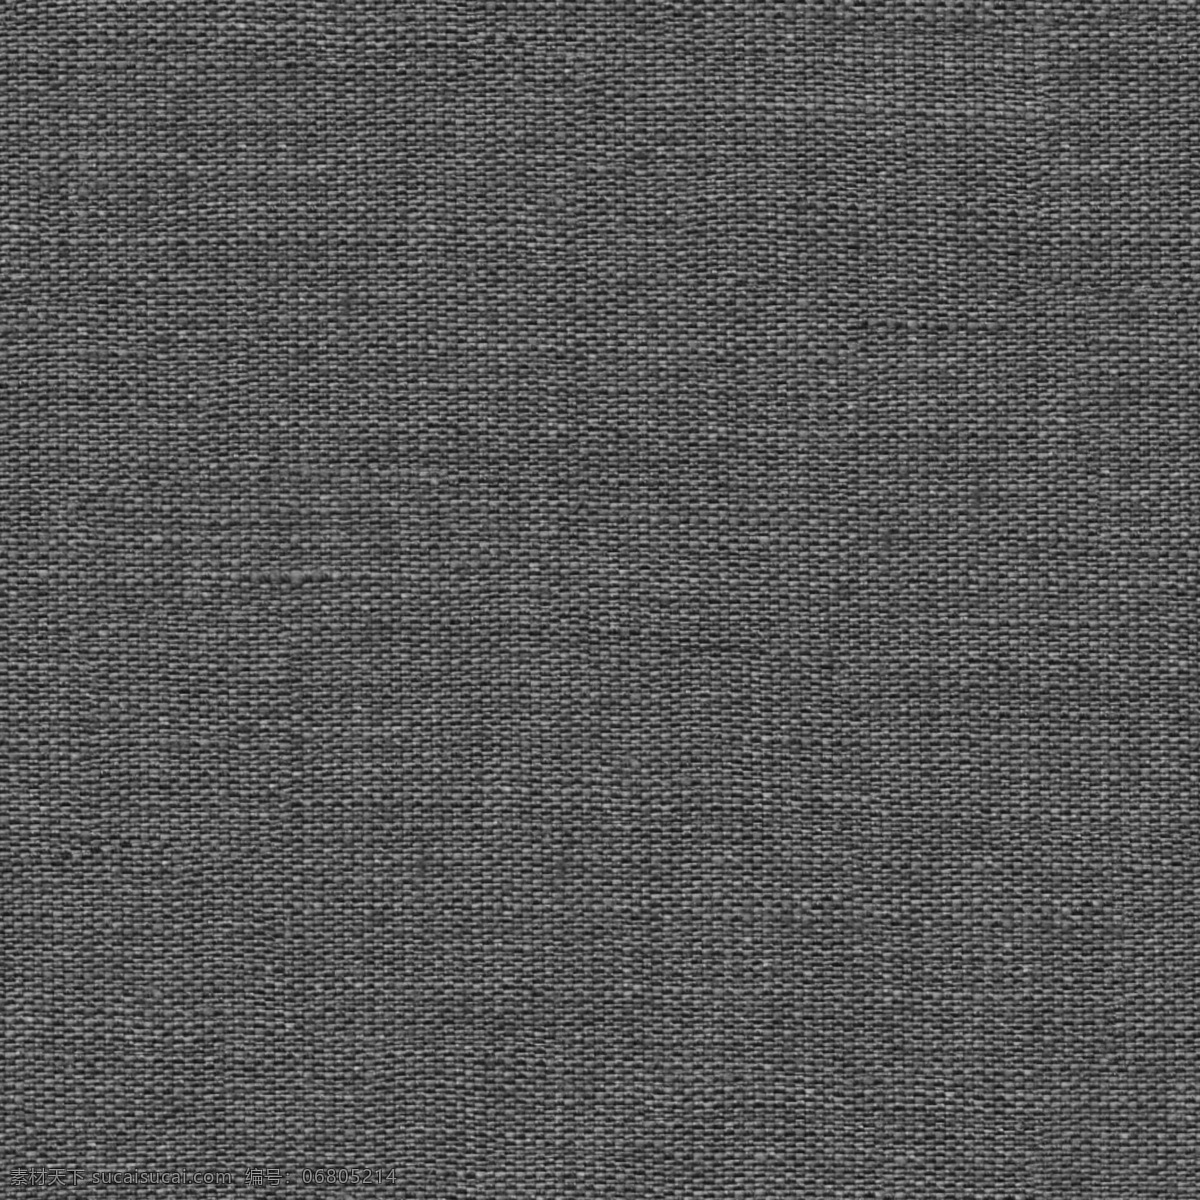 灰色布纹图片 灰色布纹 布纹图片 布纹图 亚麻布纹 亚麻 生活百科 生活素材